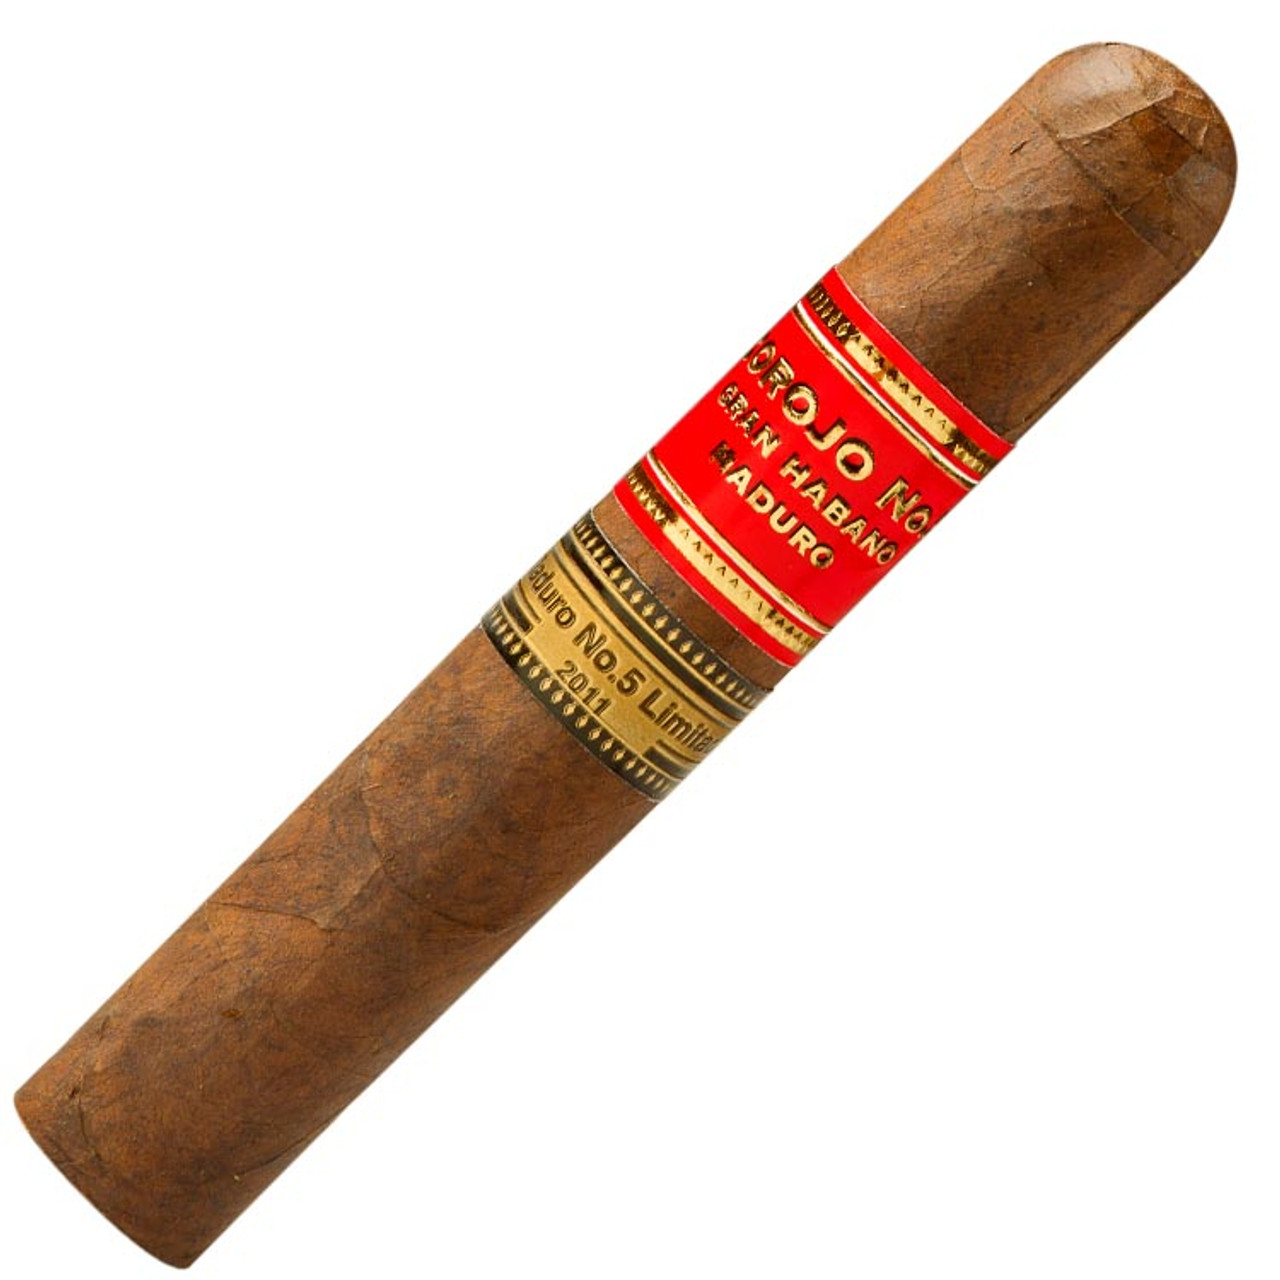 Gran Habano #5 Maduro Robusto Cigars - 5 x 52 (Box of 20)